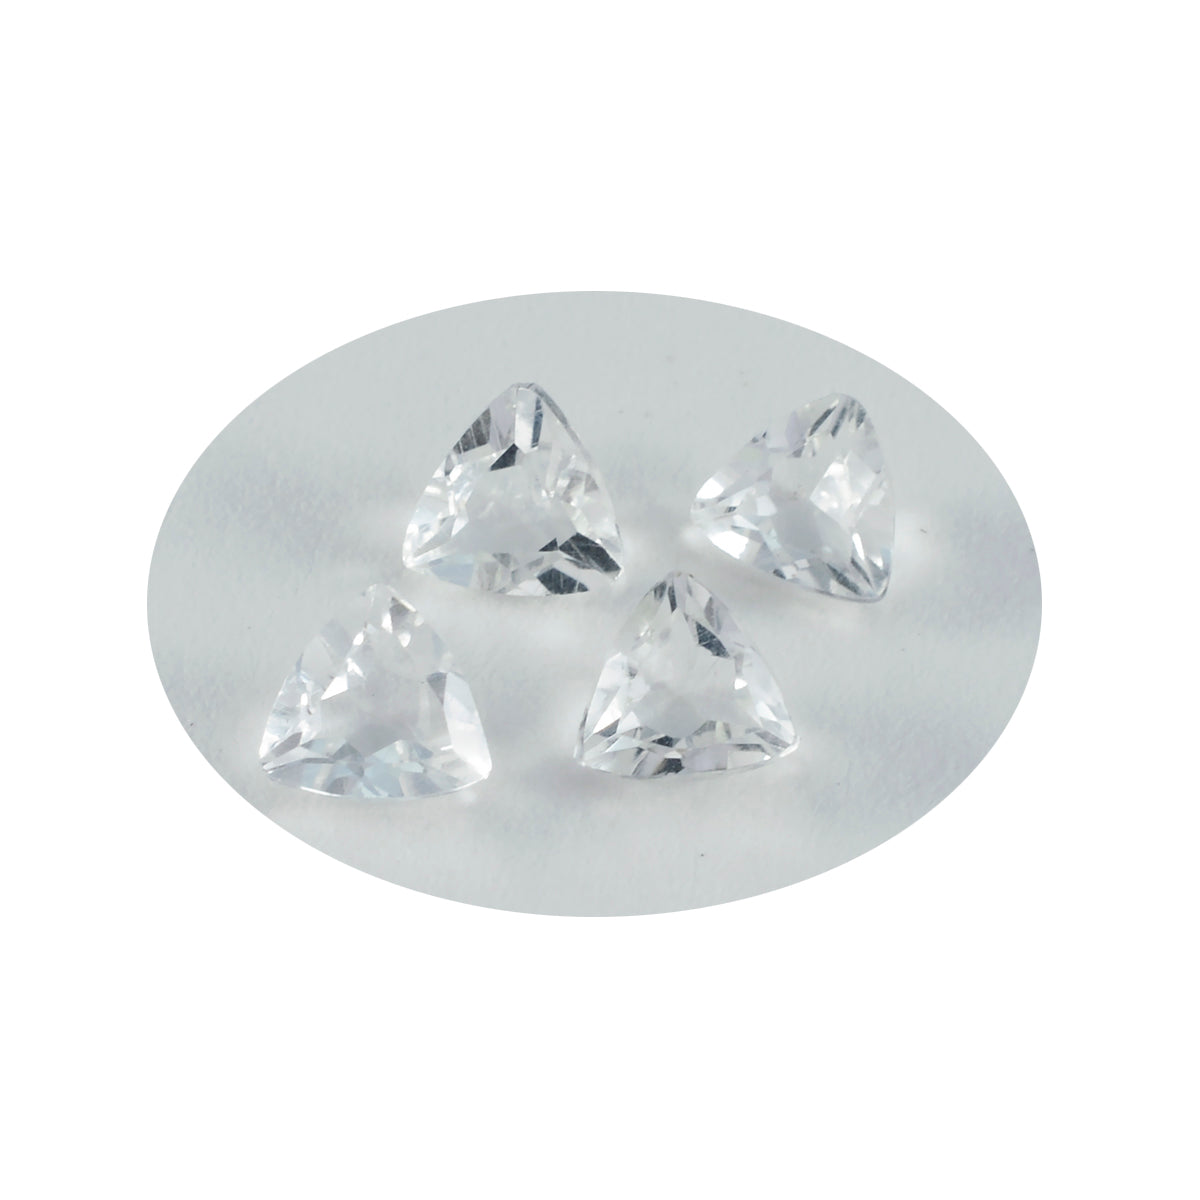 Riyogems 1 pieza de cristal de cuarzo blanco facetado de 12x12 mm con forma de billón, una gema de calidad